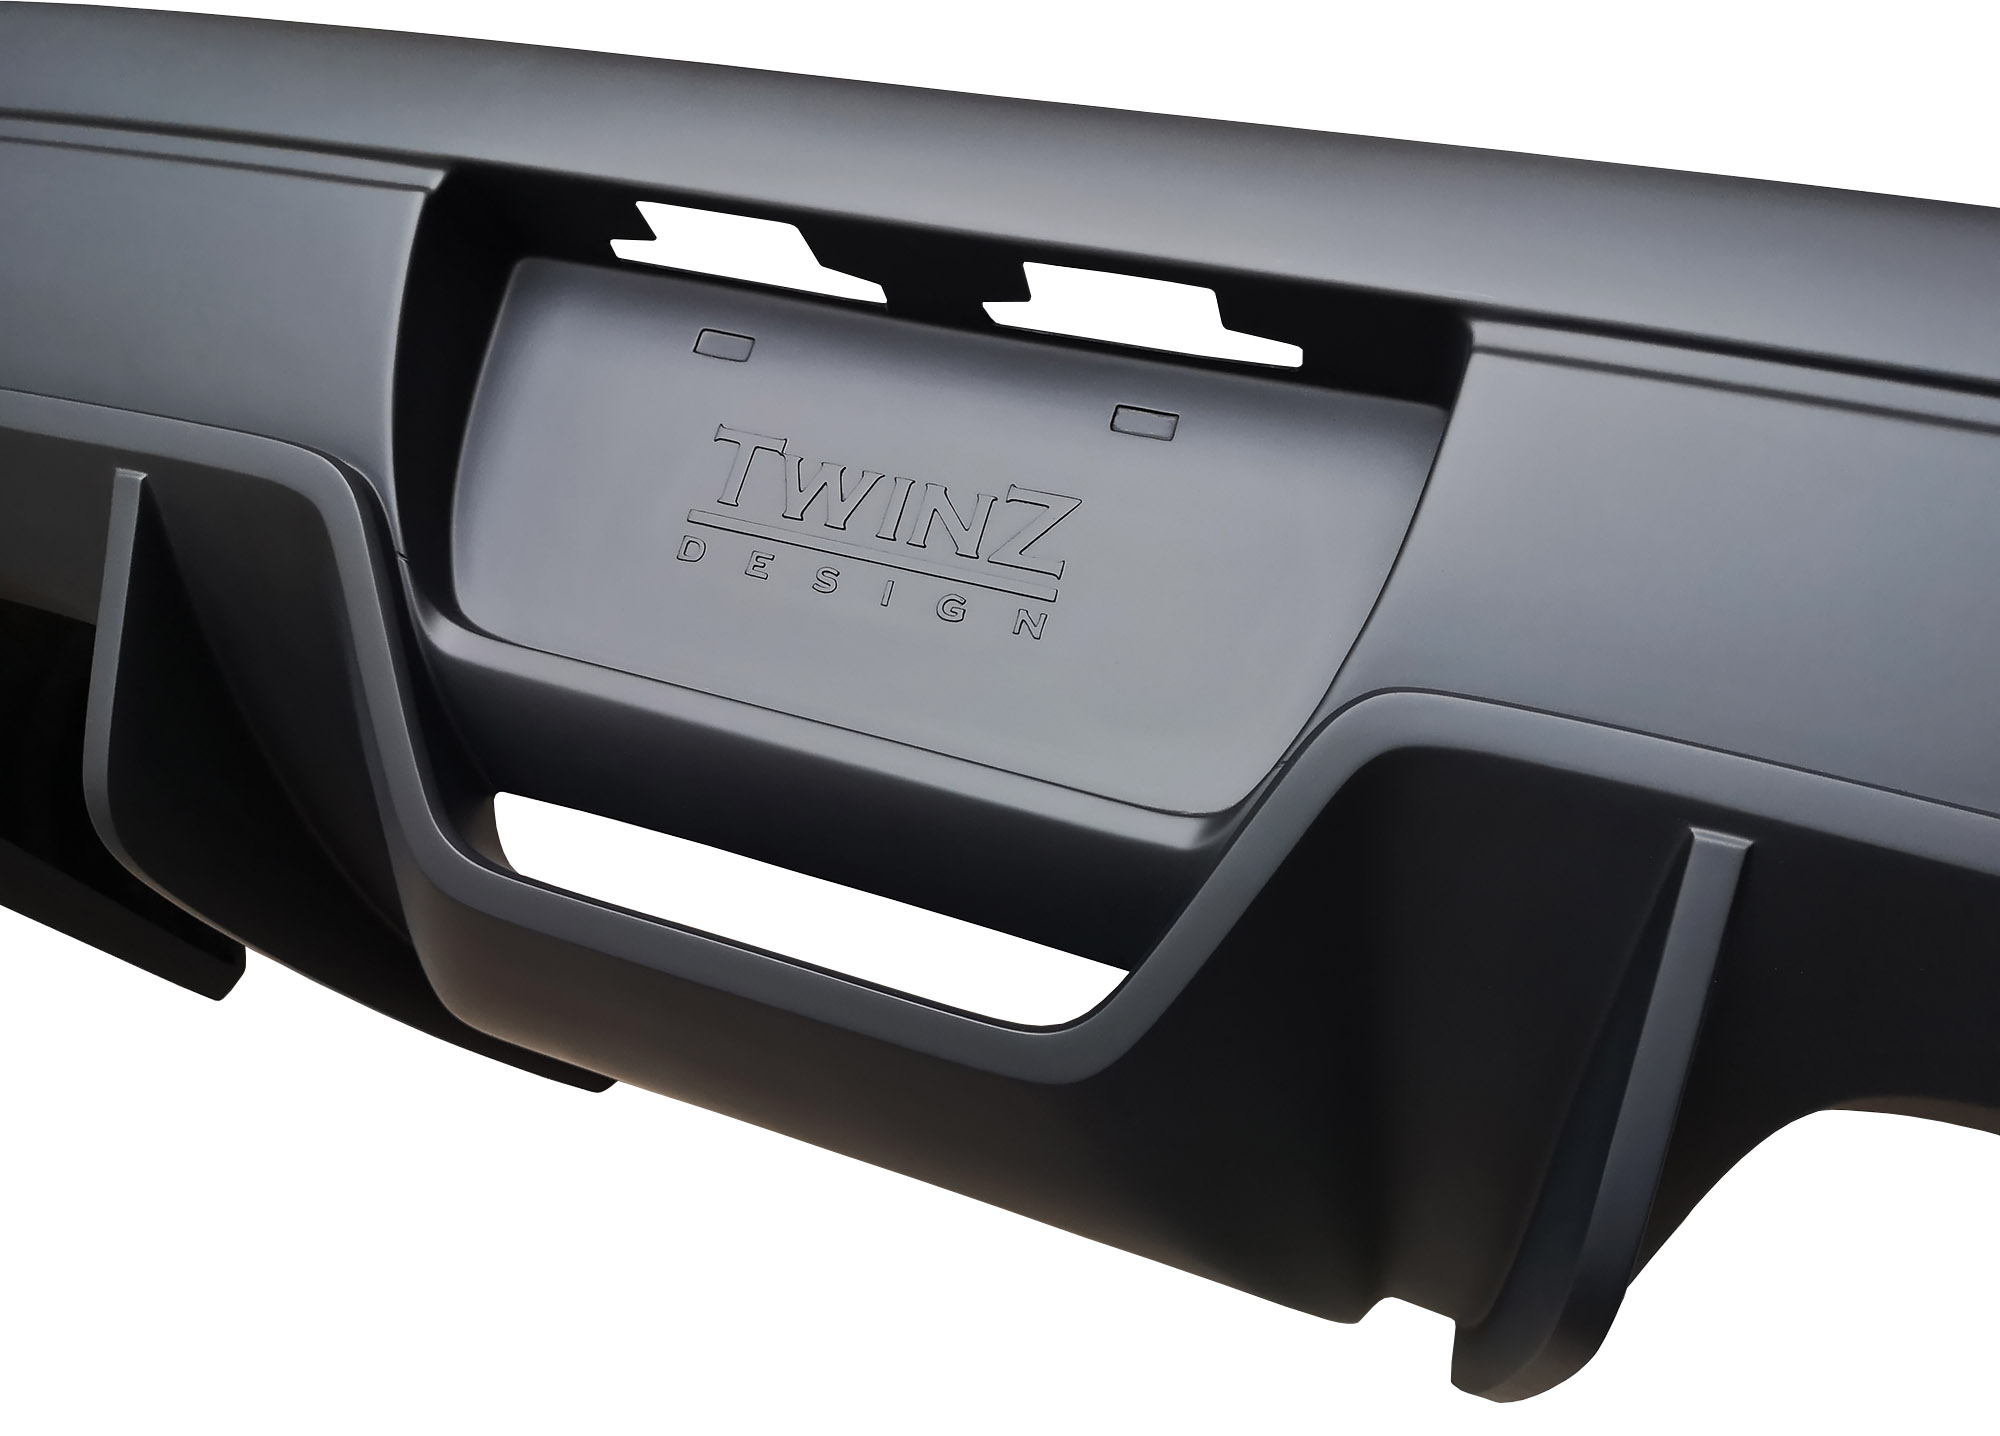 TwinZ 300ZX T4 Rear Bumper 2